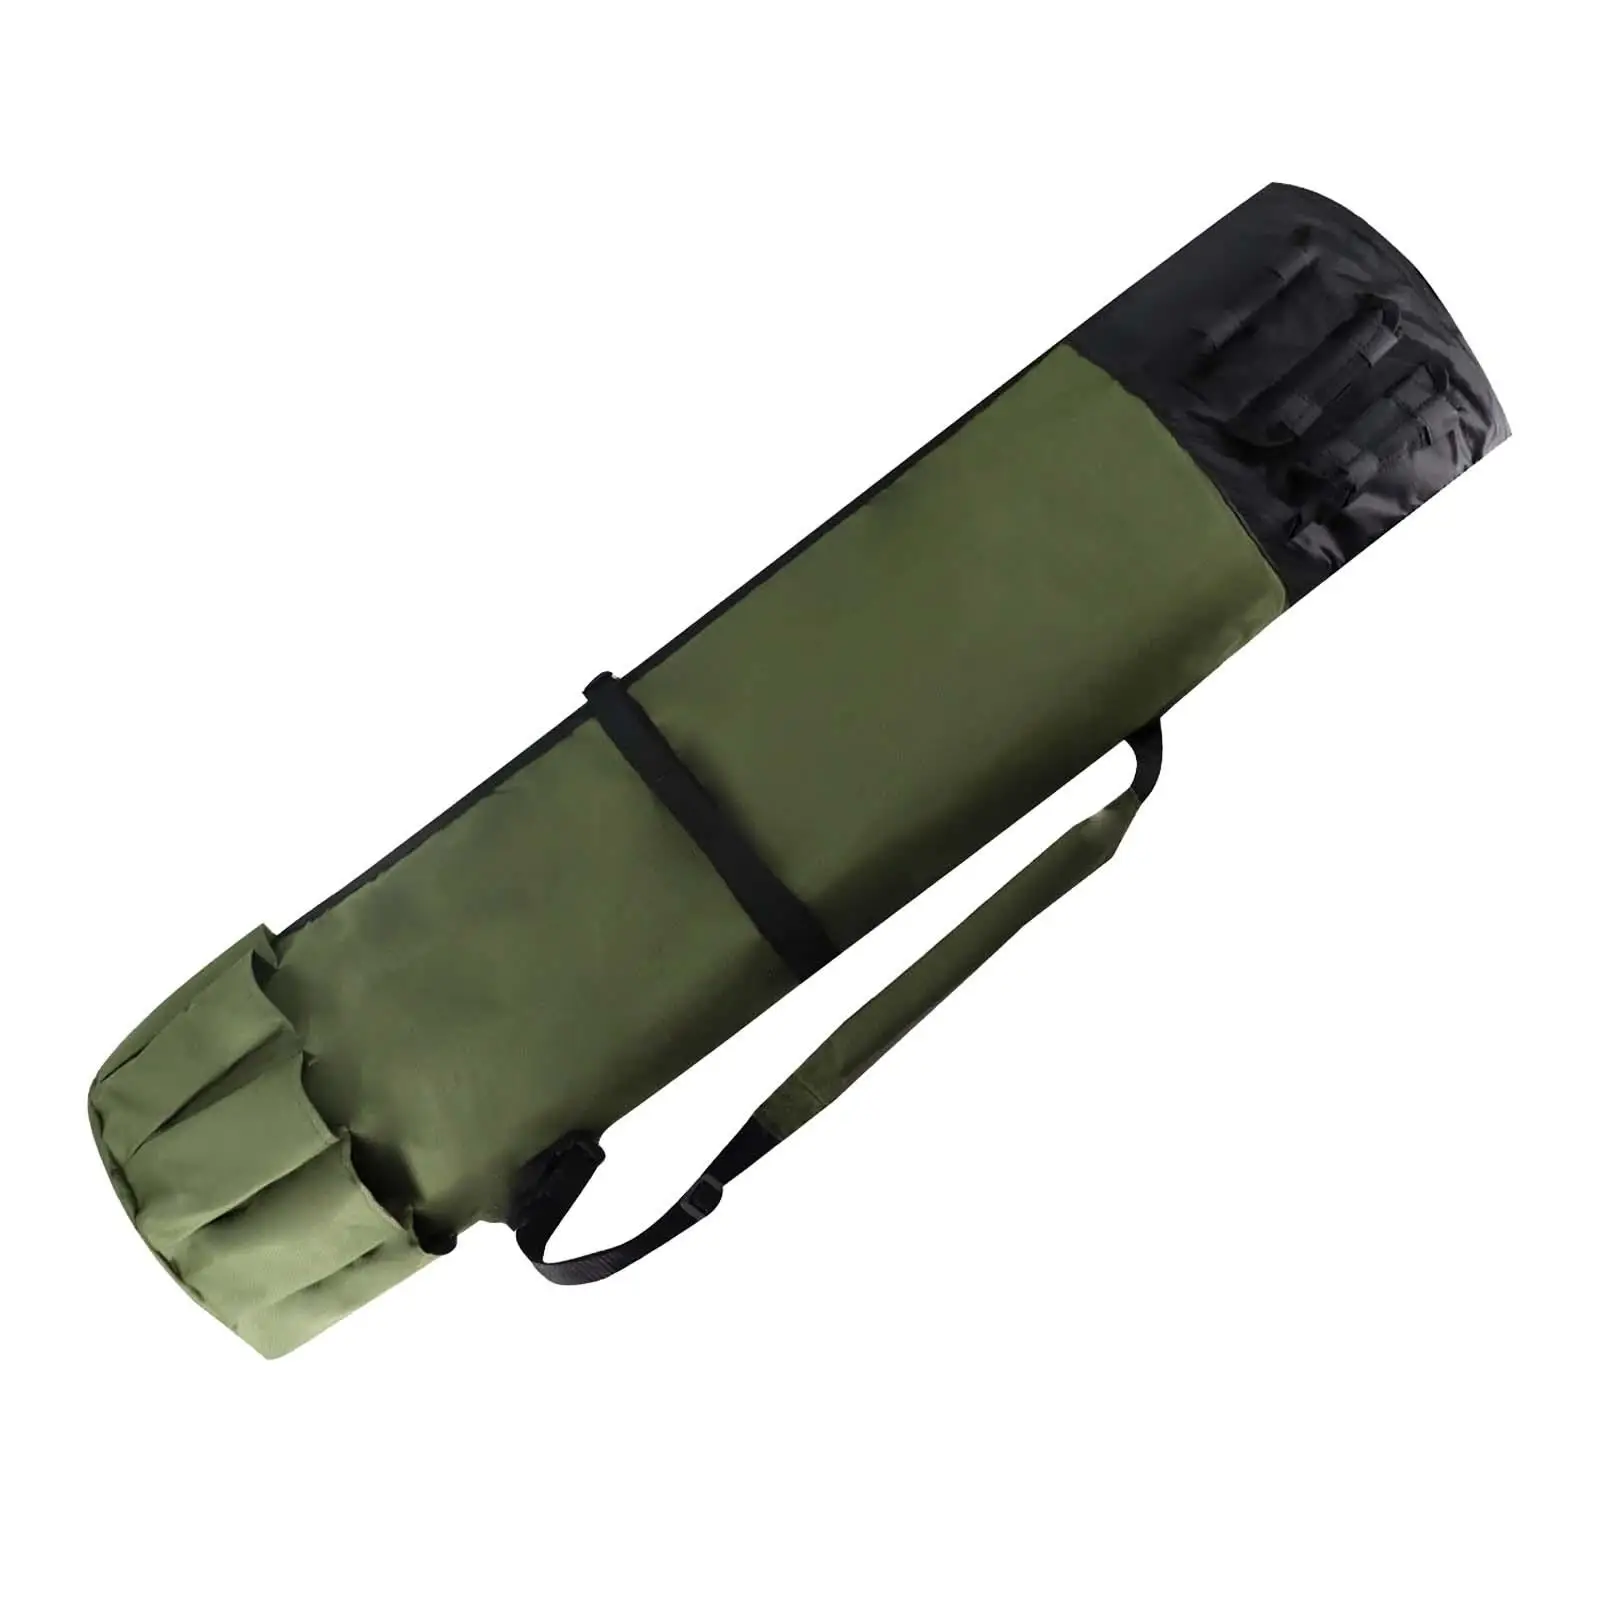 Fishing Rod Bag Fishing Gear Shoulder Bags Large Capacity Adjustable Strap Folding Rod Holder Storage Bag for Outdoor Traveling